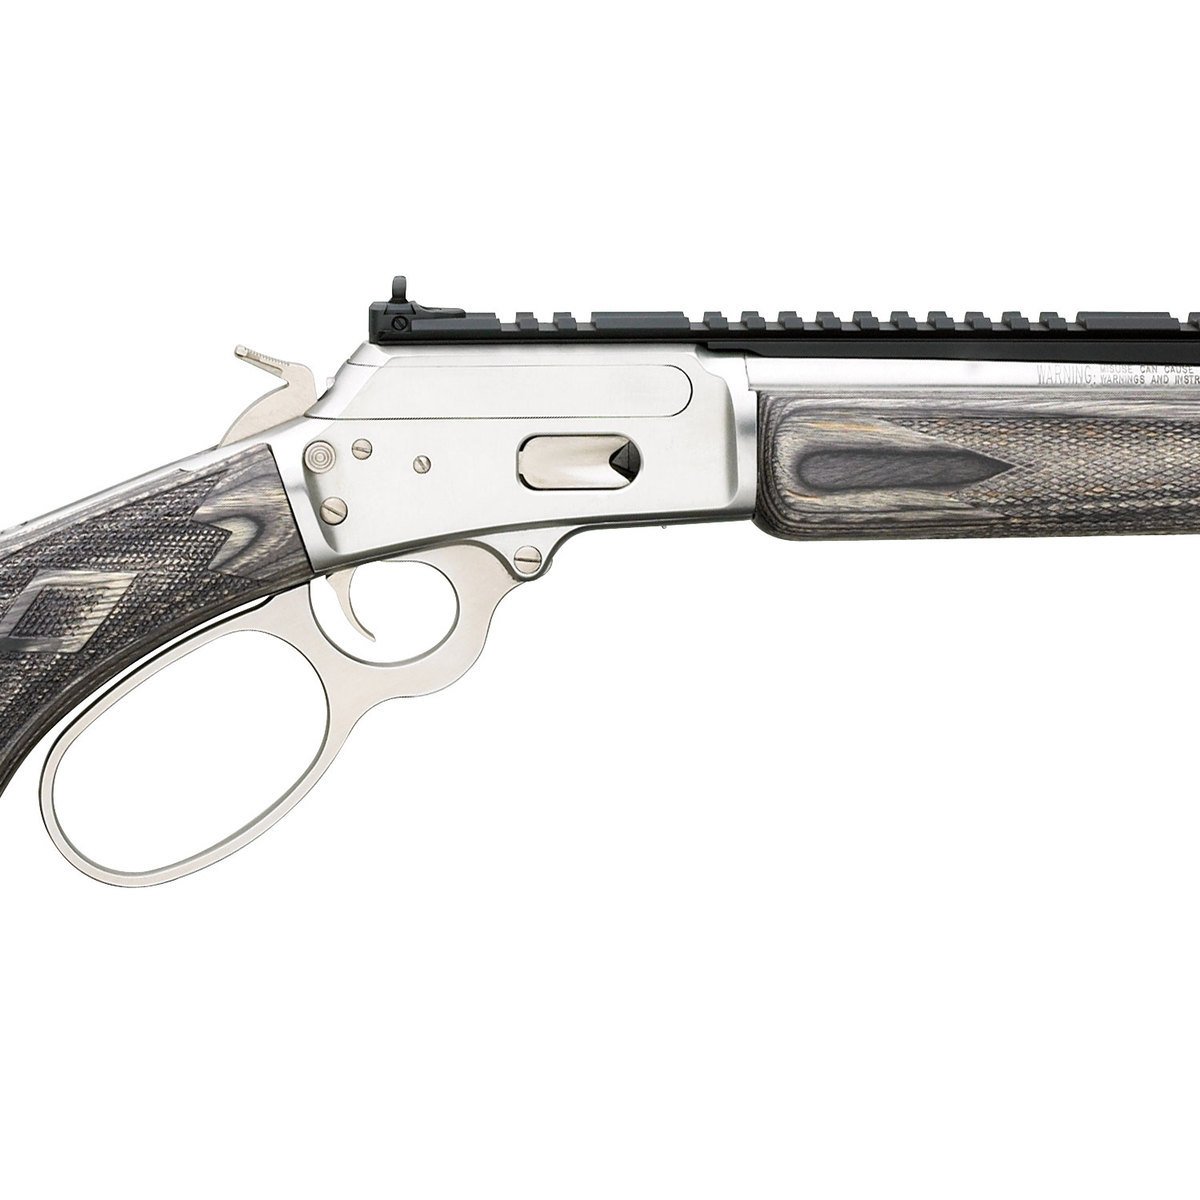 Marlin Model 1894 Lever Action Carbine 357 Magnum - Bank2home.com